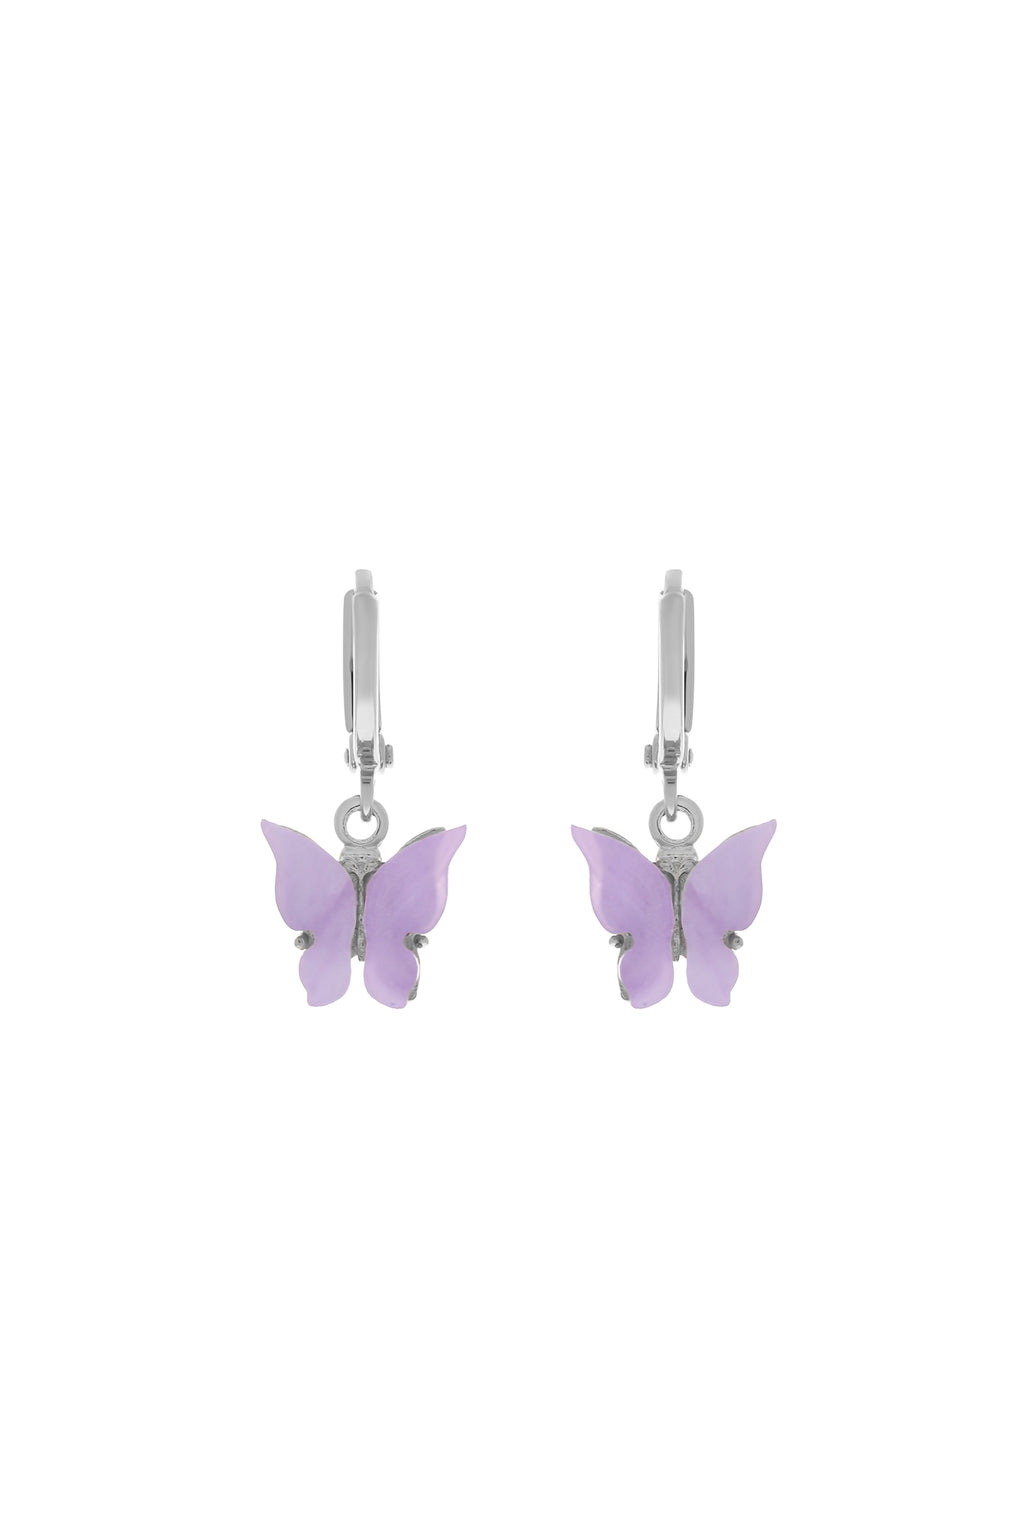 Flutterby Butterfly Earrings – The Panda Storee